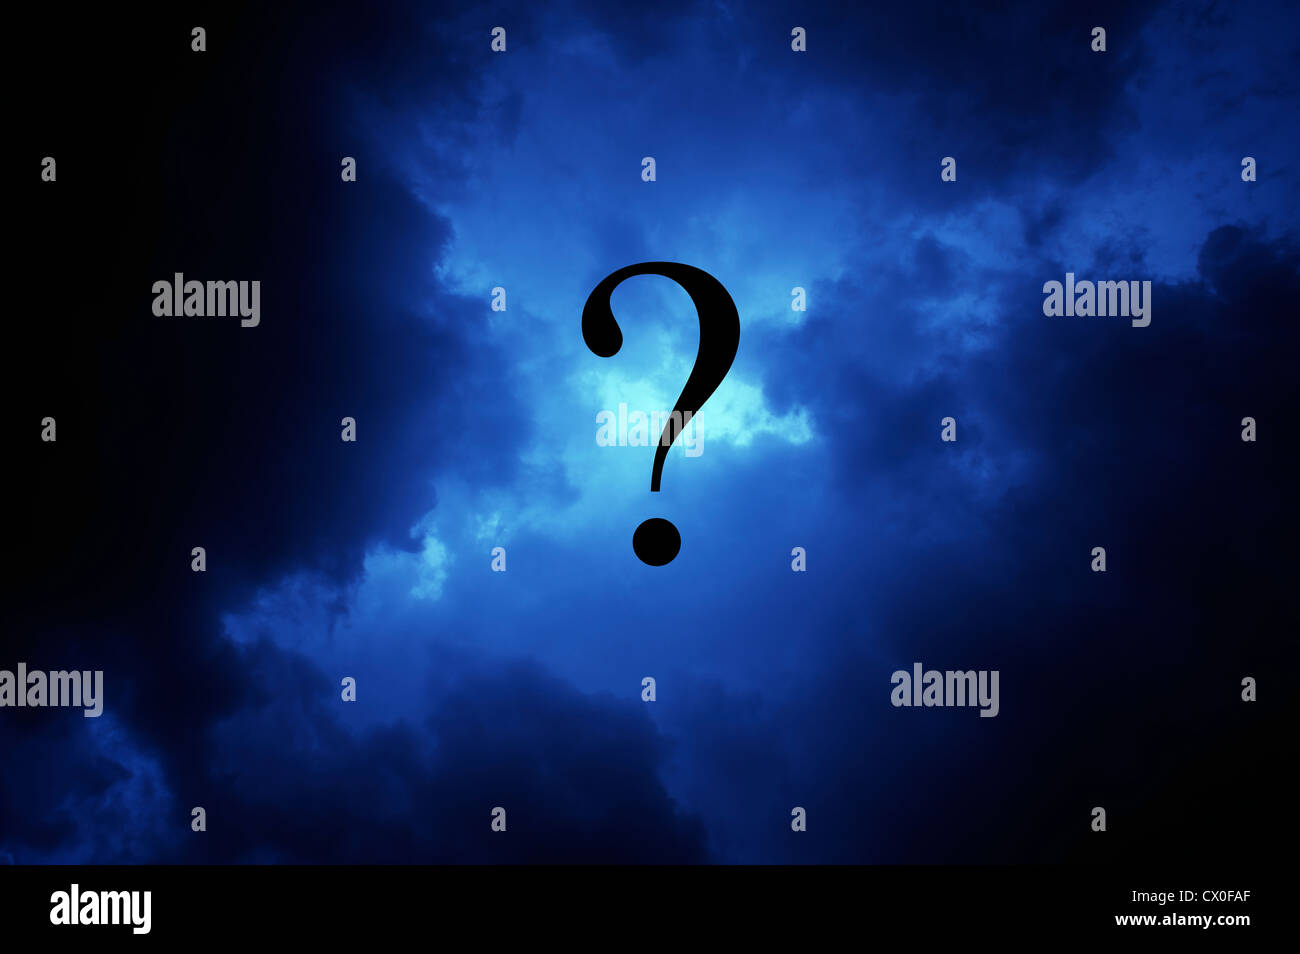 launisch dunkle Gewitterwolken mit Fragezeichen im Zentrum Stockfoto